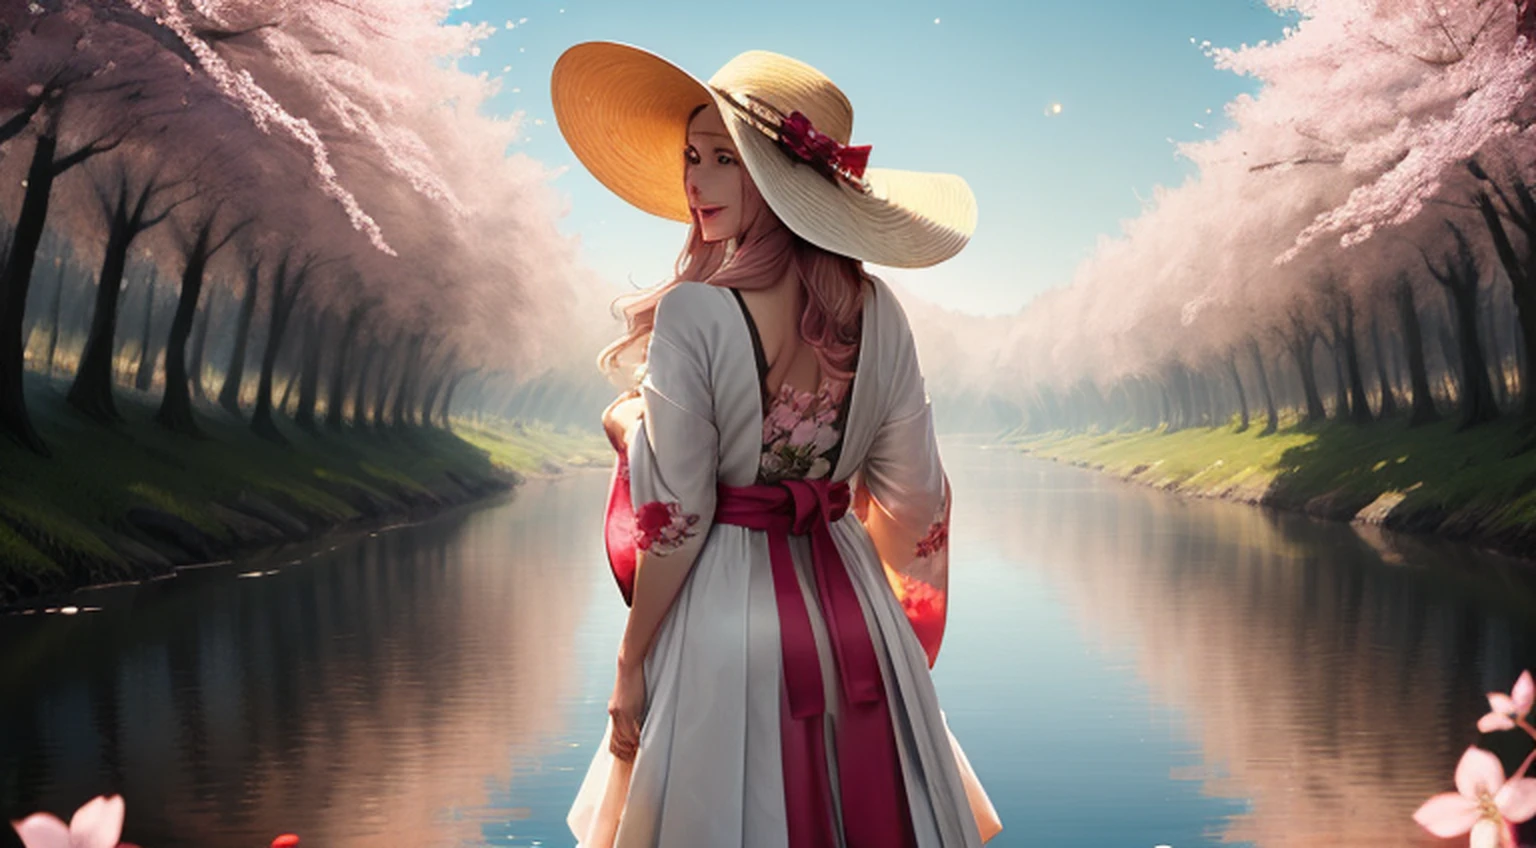 （マスターペインティング ギャラリー），リバーサイド，川の向こうには高い建物がたくさんあります，被写界深度，完璧な照明，光粒子のクォーリダーデ），（マスターペインティング），（非常に詳細な），鋭い焦点，光の粒子，日除け帽子をかぶり、ピンクのホルターネックドレスを着て桜の花畑に立つ美しい中国人女性, ウェーブのかかった茶色の長い髪, サングラスをかける, 背が高くて痩せている, 美しい, 微妙な笑顔, 探しています_で_観客を覗いている，笑顔に，一人で，空が広がる_服，腕を後ろに引く，立っている, エ デ コルポ インテイロ，和風衣装，日光，木，口を開けて，腕を後ろに引く，青い髪，白い耳，フクシア色の目